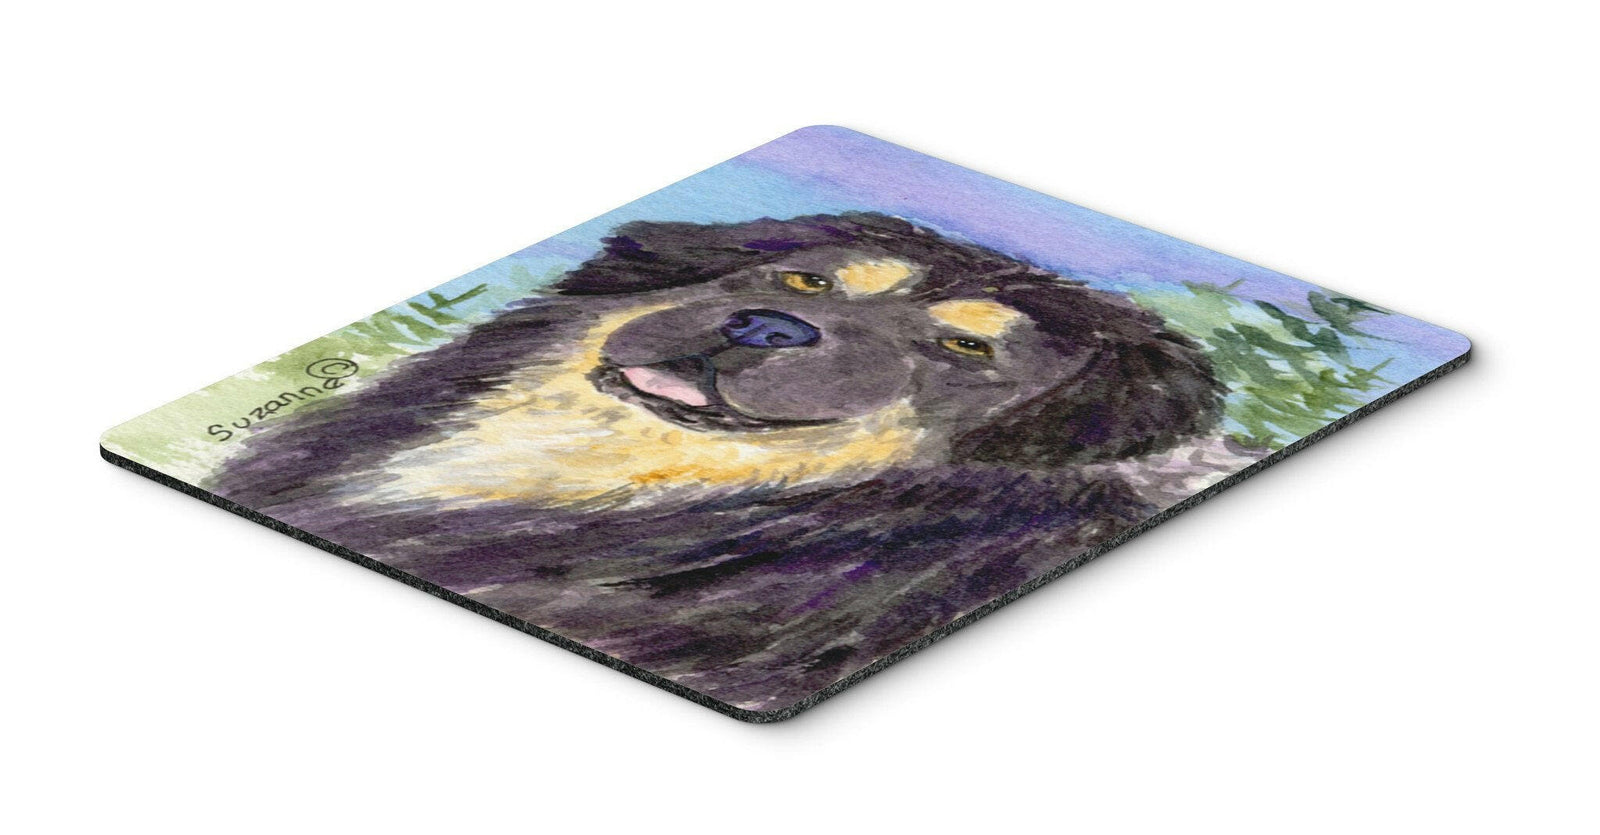 Tibetan Mastiff Mouse Pad / Hot Pad / Trivet by Caroline's Treasures